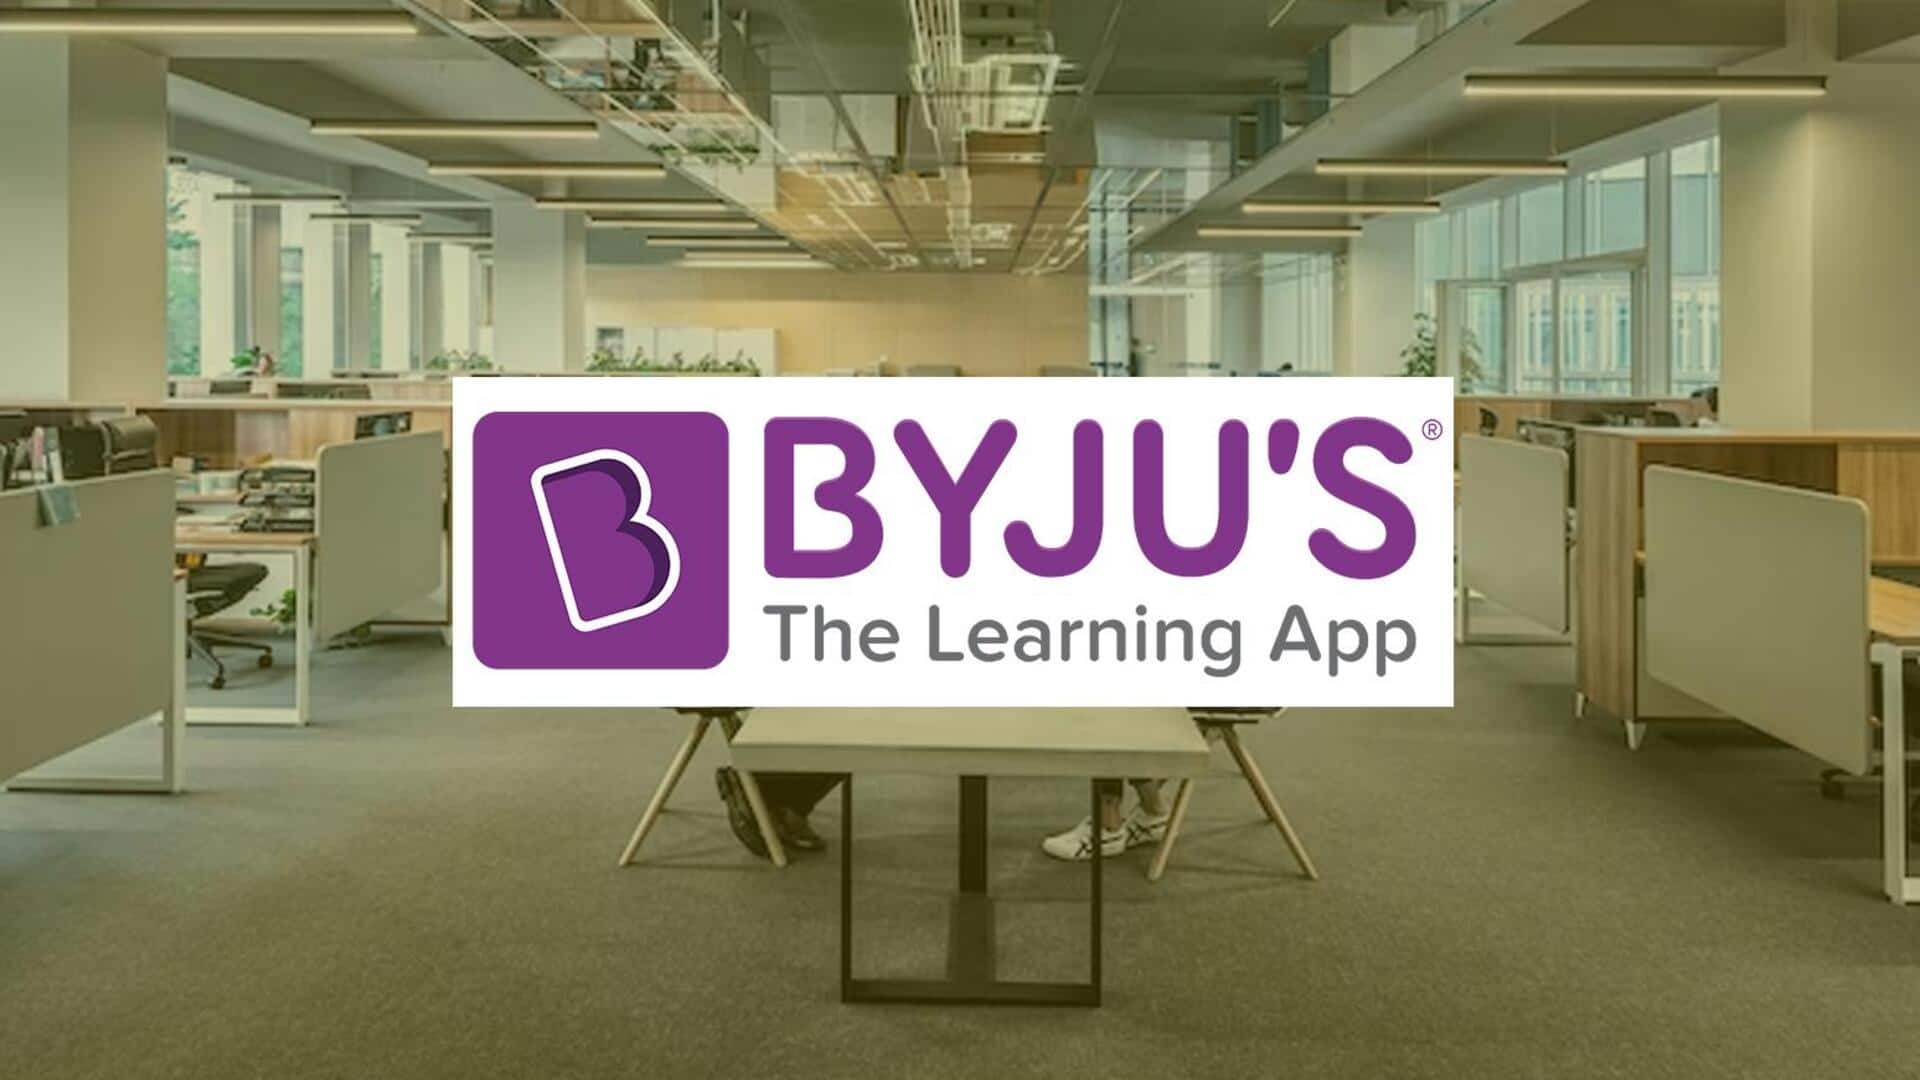 BYJU'S ने लागत में कटौती के लिए खाली किया बेंगलुरू स्थित अपना सबसे बड़ा कार्यालय